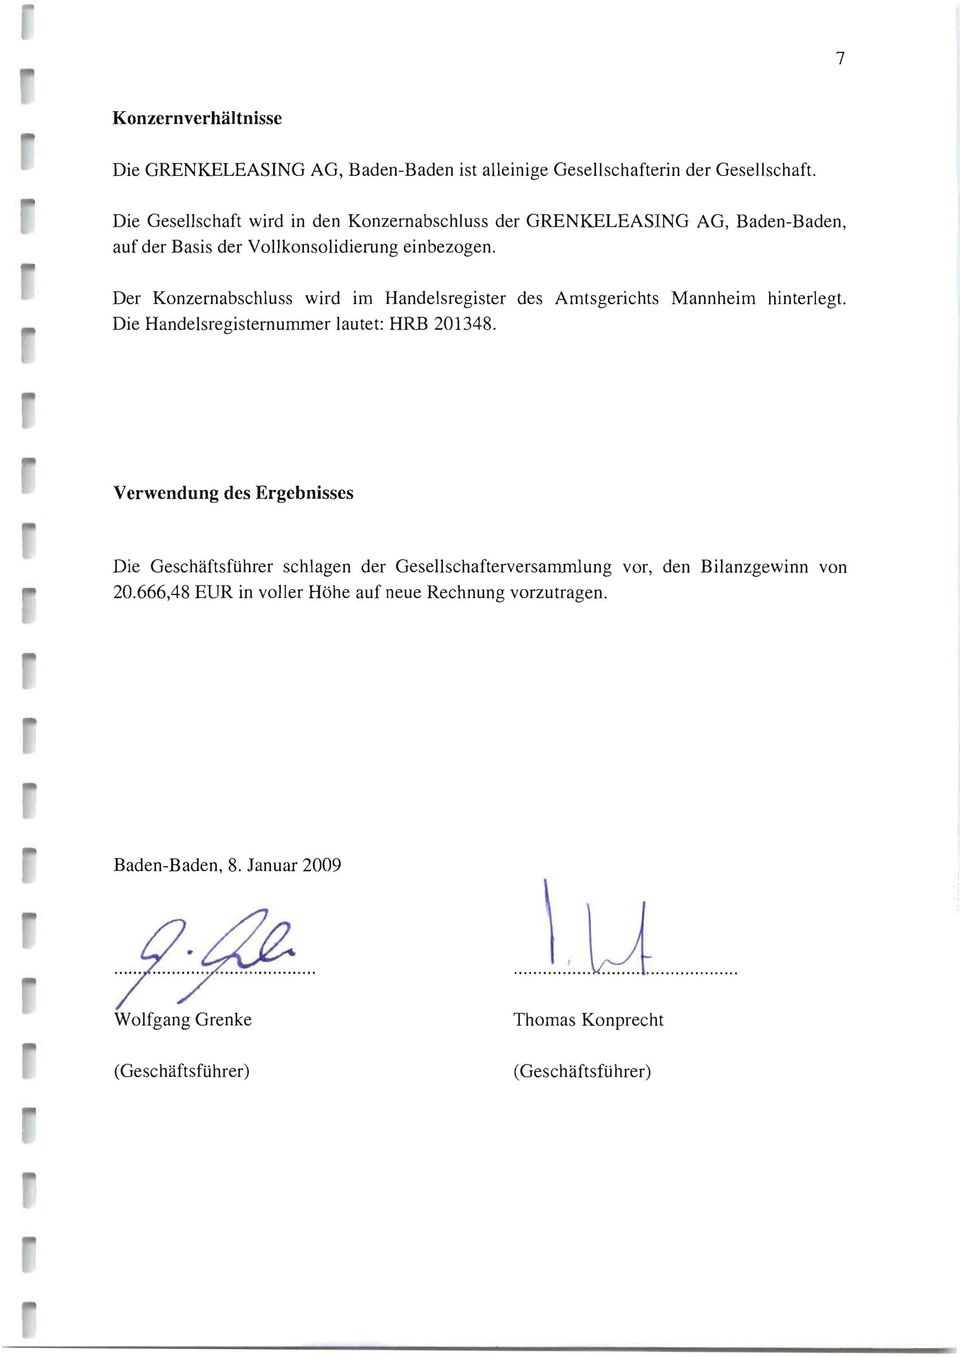 Der Konzernabschluss wird im Handelsregister des Amtsgerichts Mannheim hinterlegt. Die Handelsregisternummer lautet: HRB 21348.